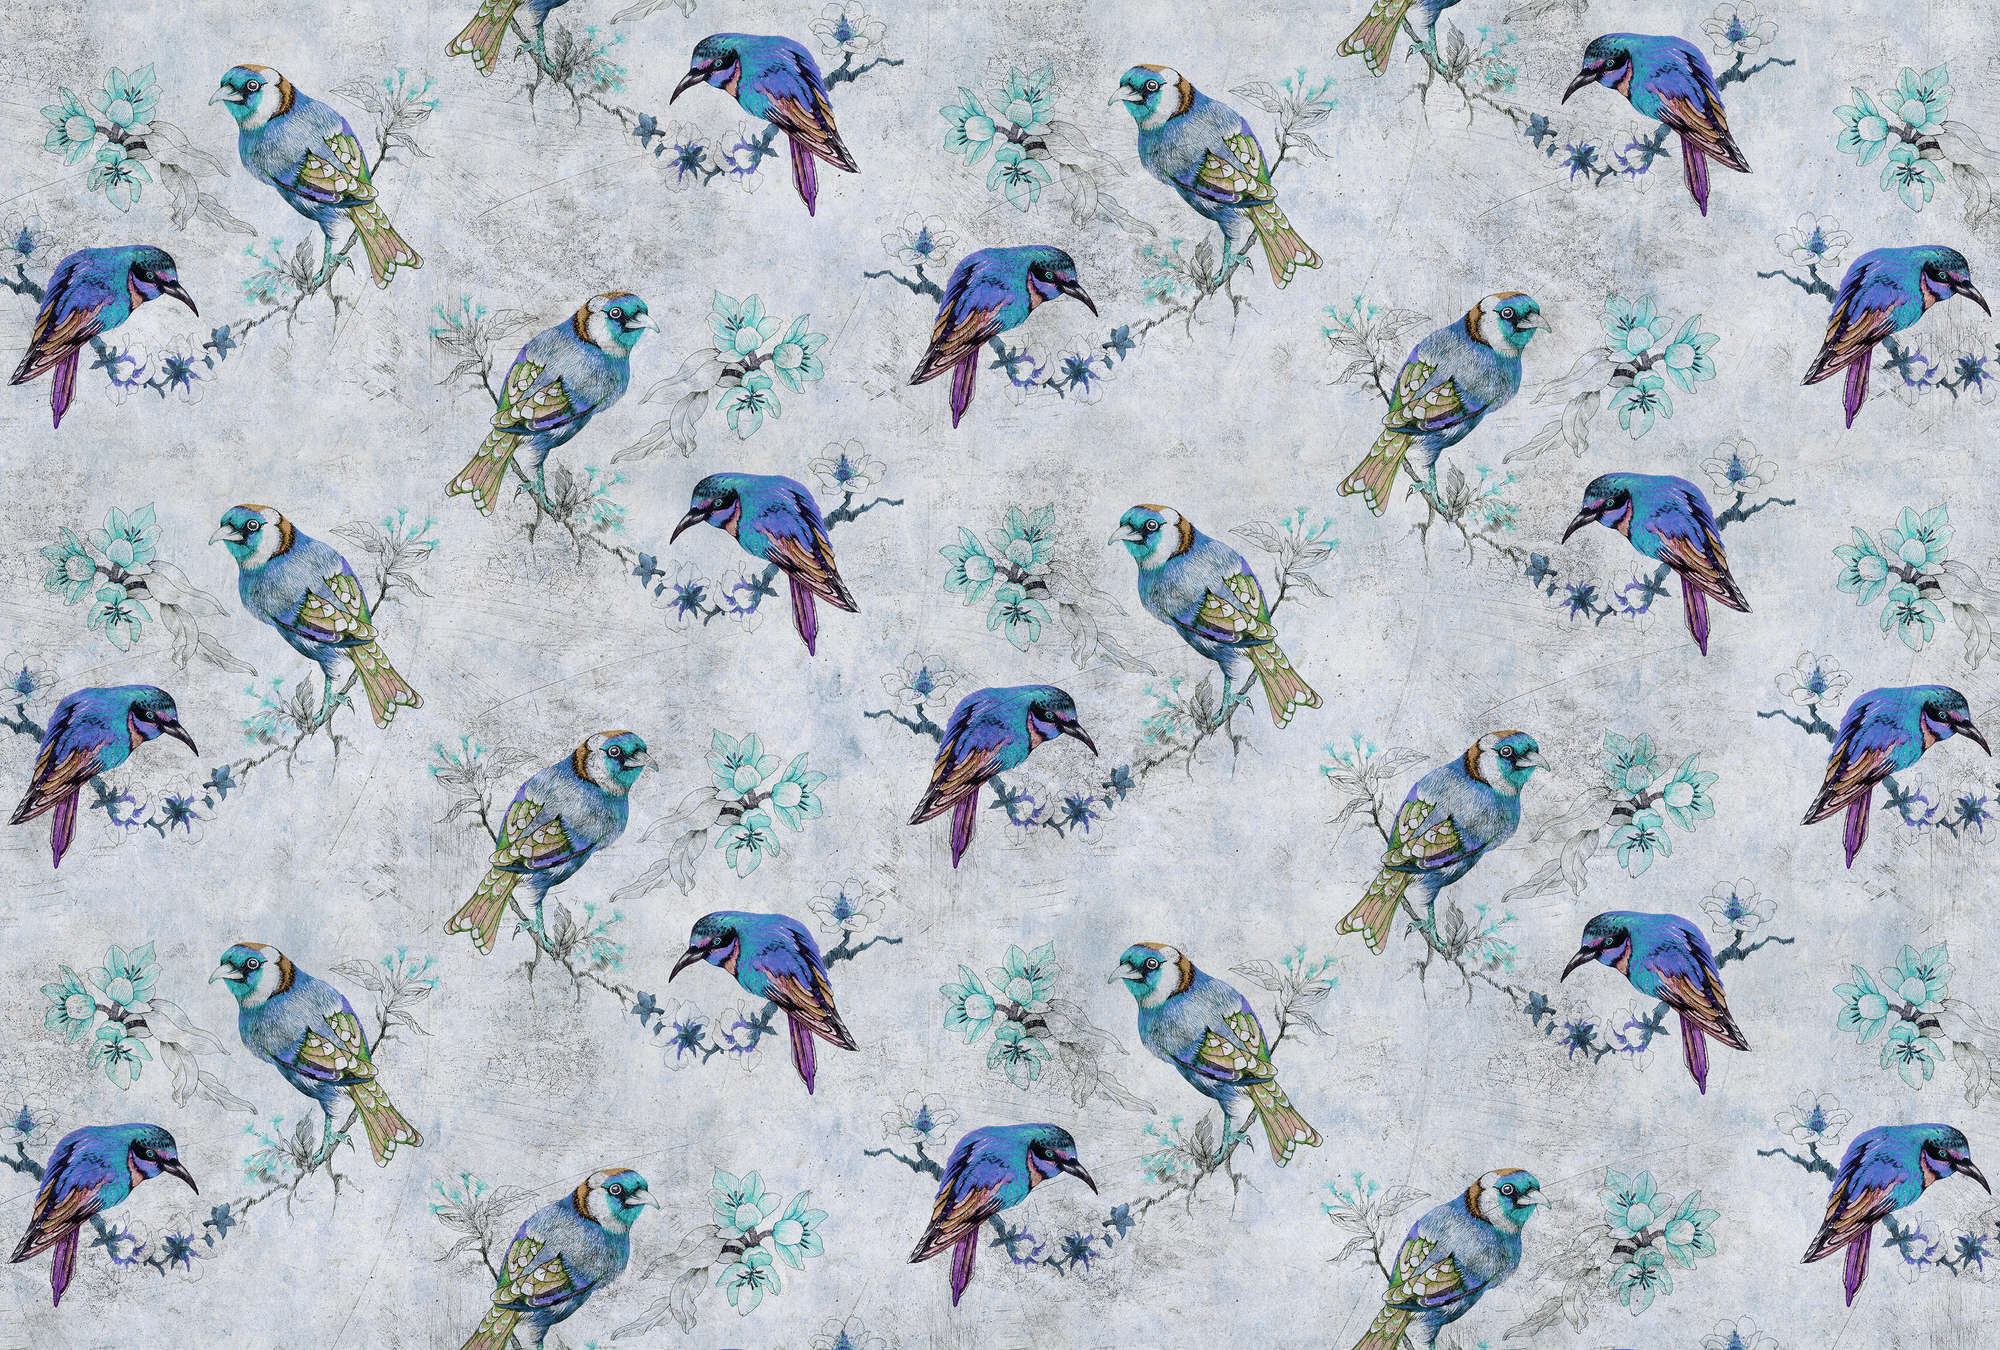             Pájaros del amor 1 - Fotomural estilo dibujo de pájaros en textura rayada - Azul, Gris | Tela no tejida lisa de alta calidad
        